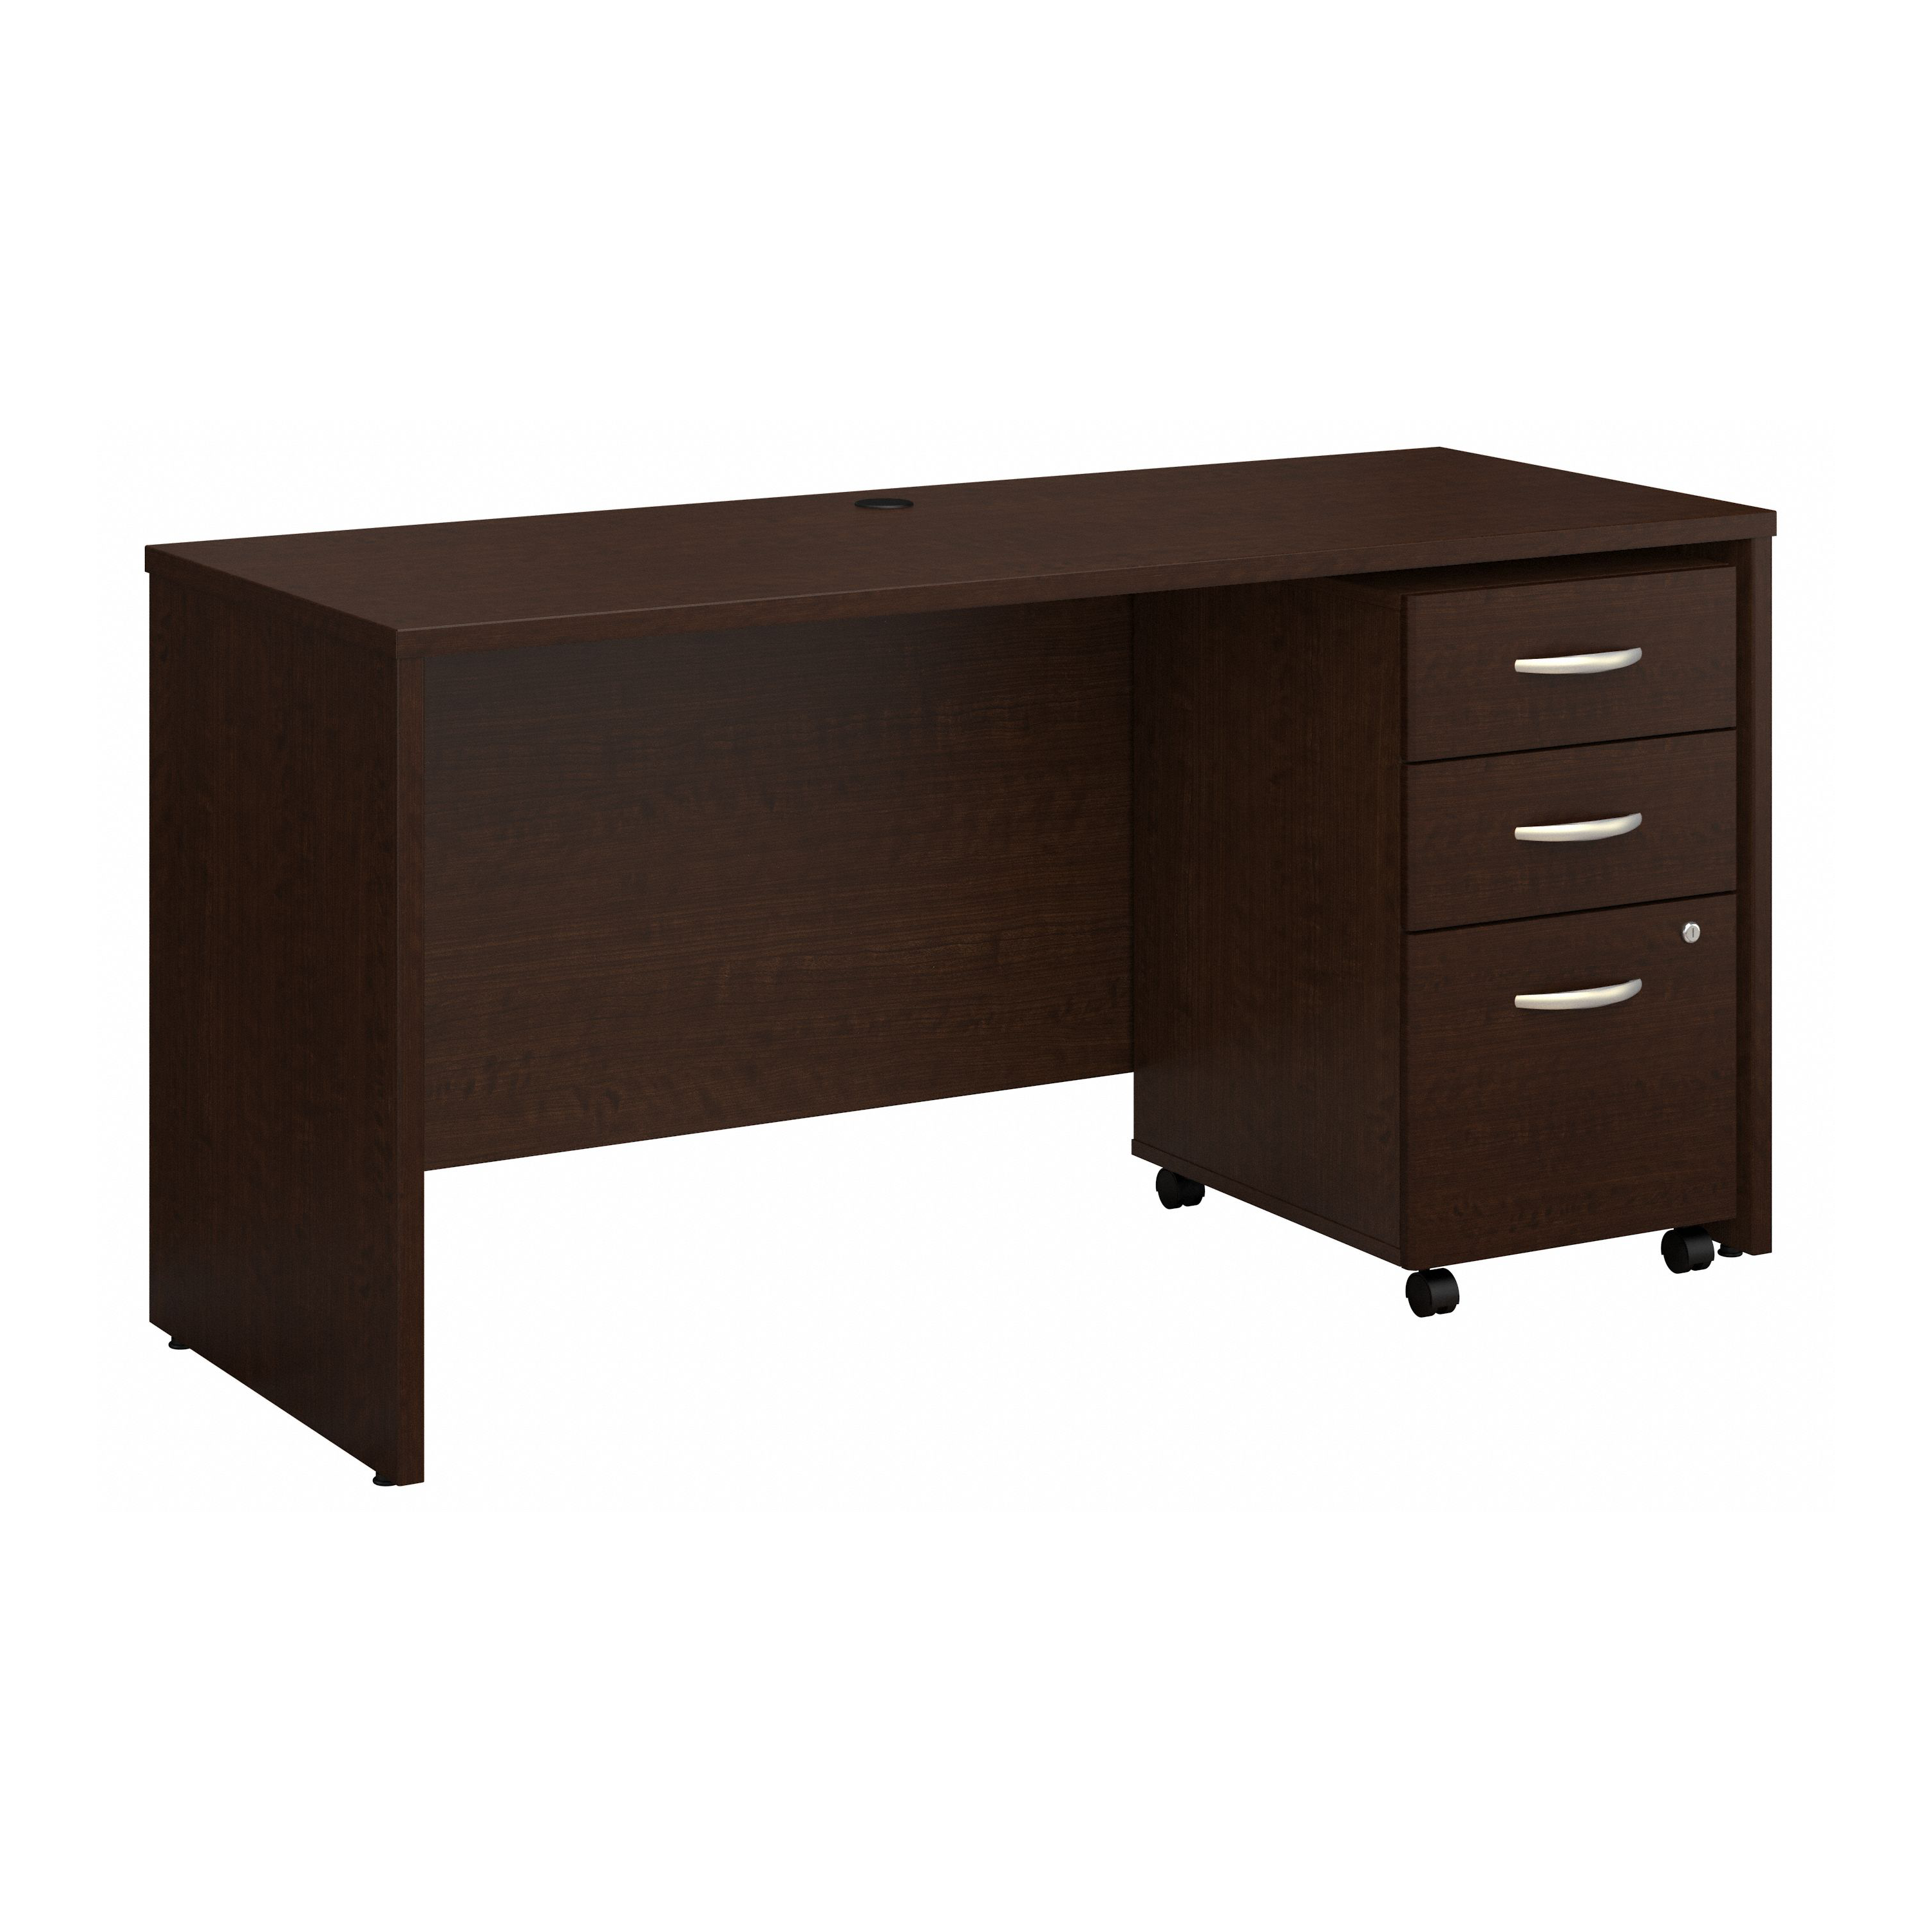 Shop Bush Business Furniture Series C 60W x 24D Office Desk with Mobile File Cabinet 02 SRC025MRSU #color_mocha cherry